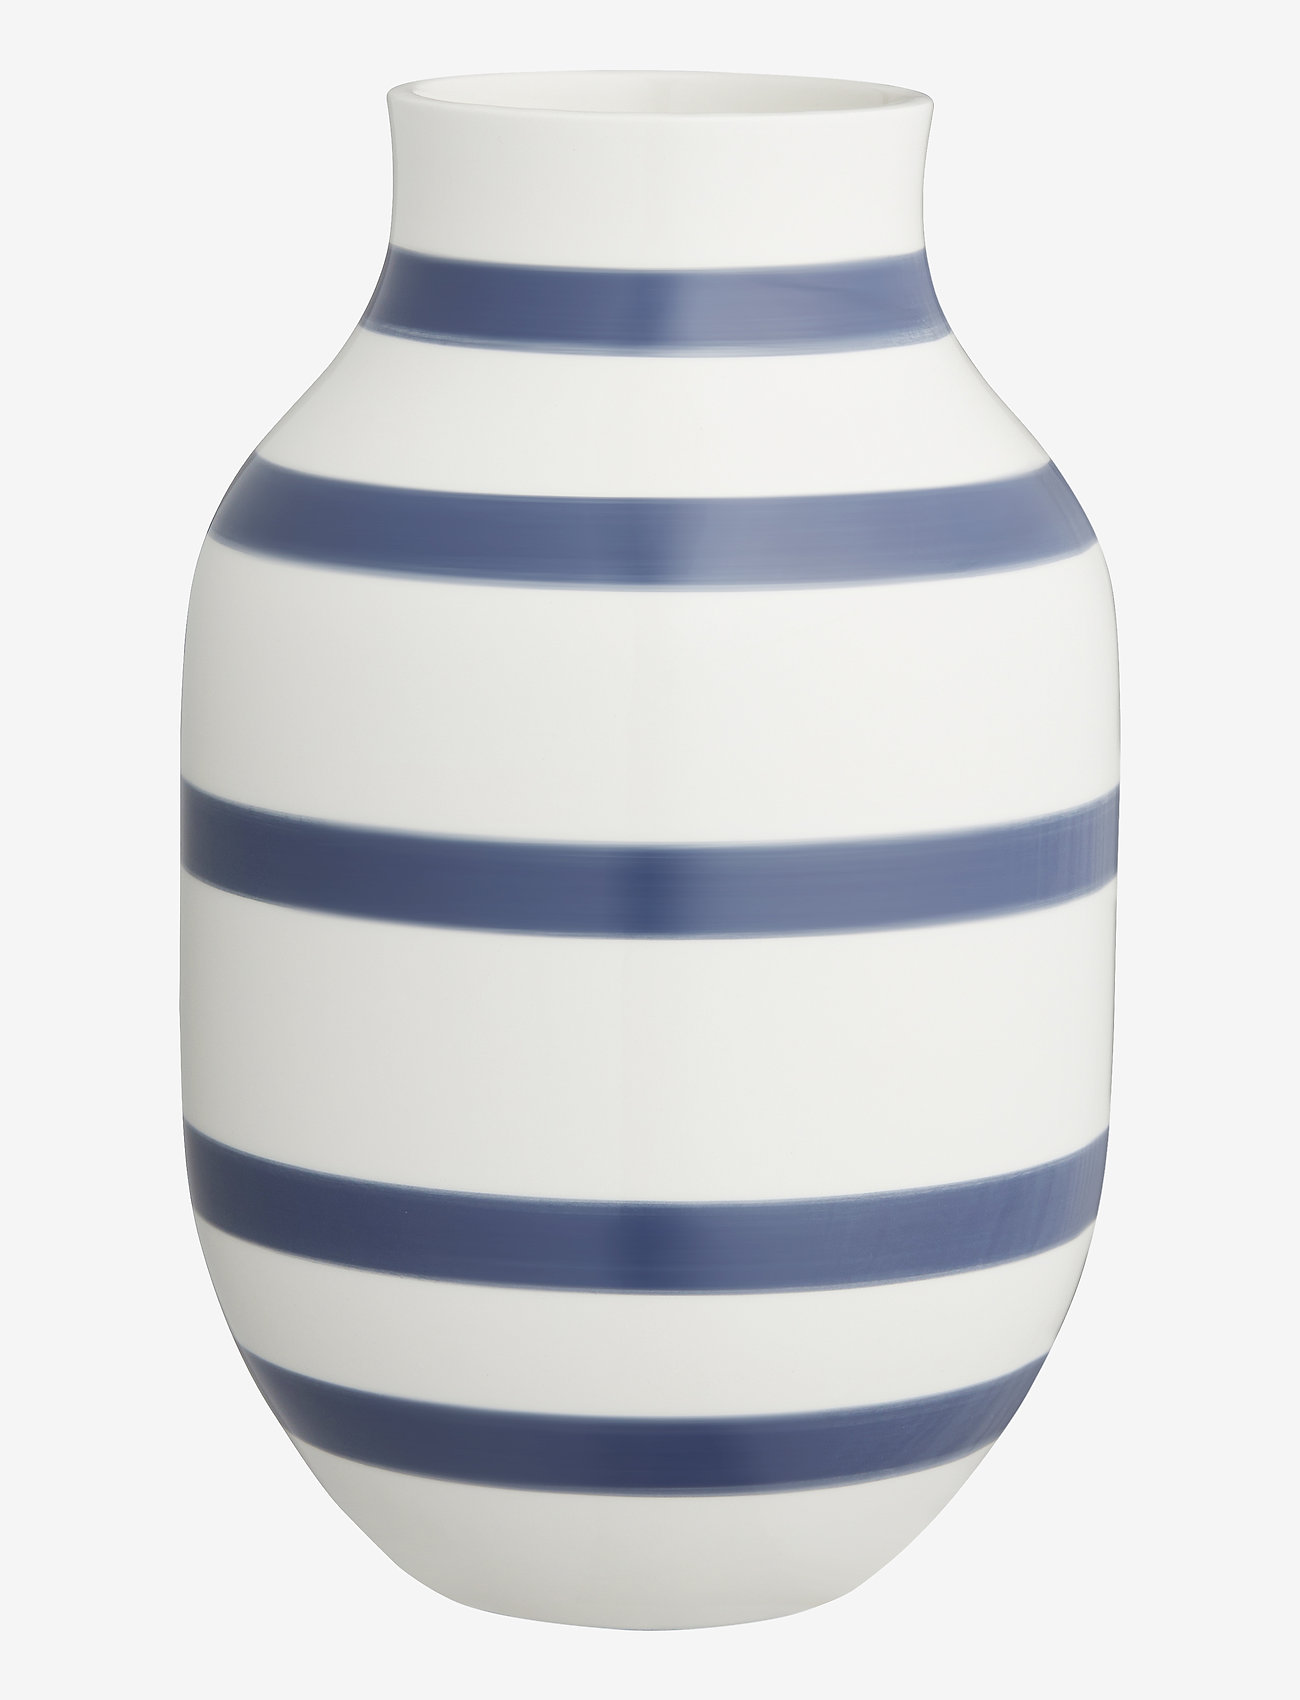 Kähler - Omaggio Vase - big vases - blue - 0